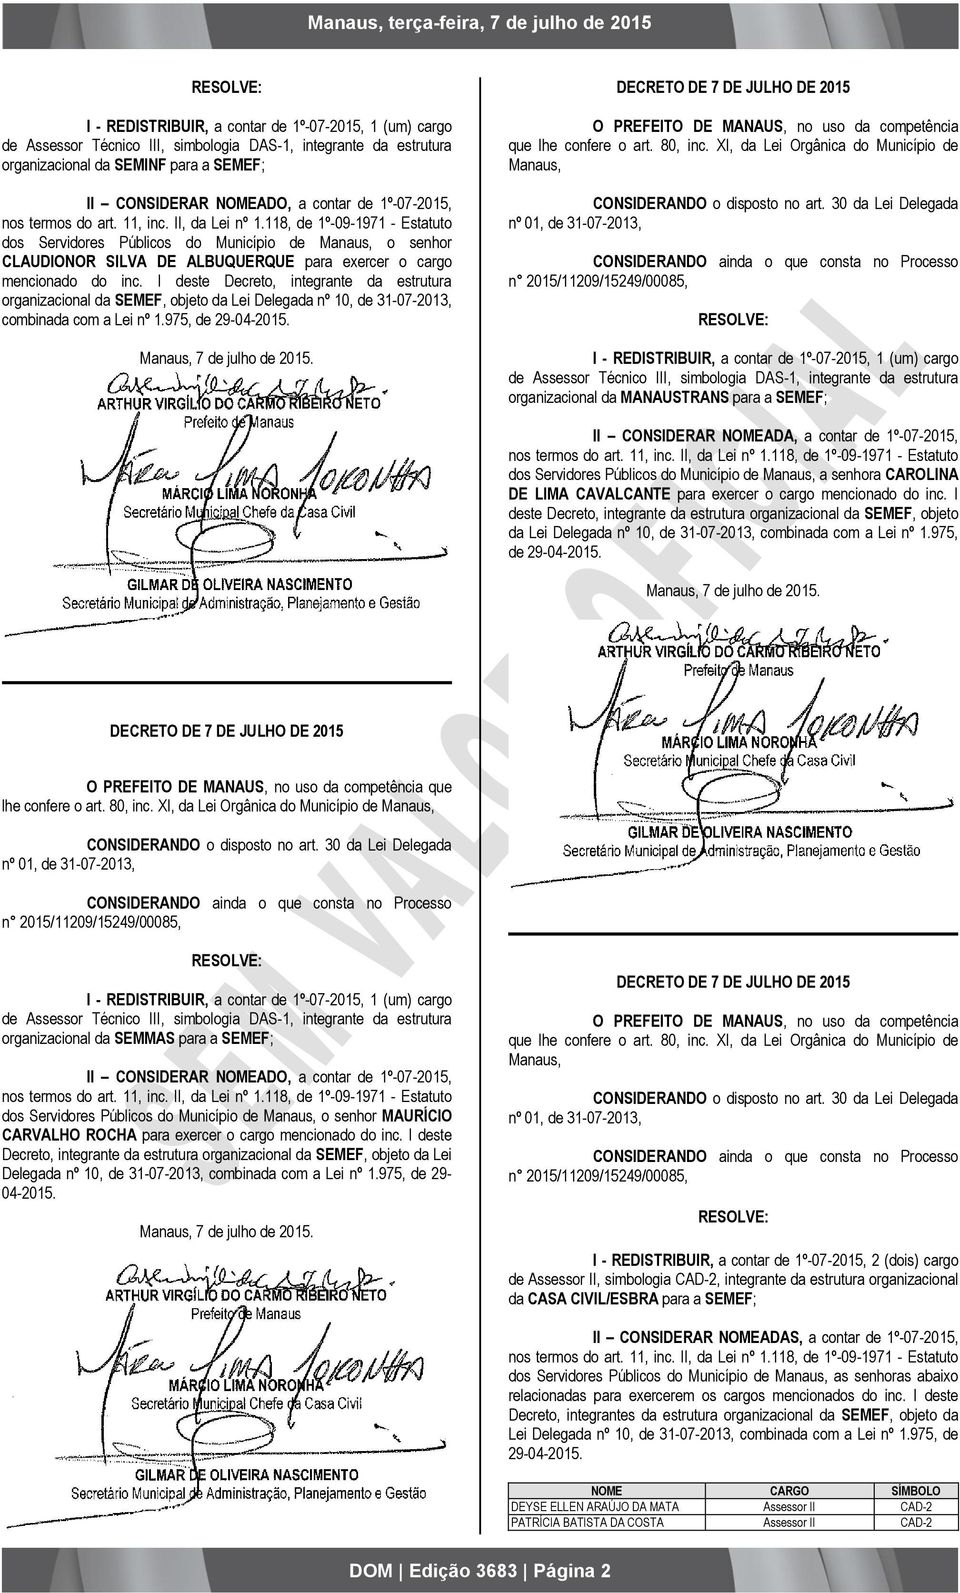 118, de 1º-09-1971 - Estatuto dos Servidores Públicos do o senhor CLAUDIONOR SILVA DE ALBUQUERQUE para exercer o cargo mencionado do inc.